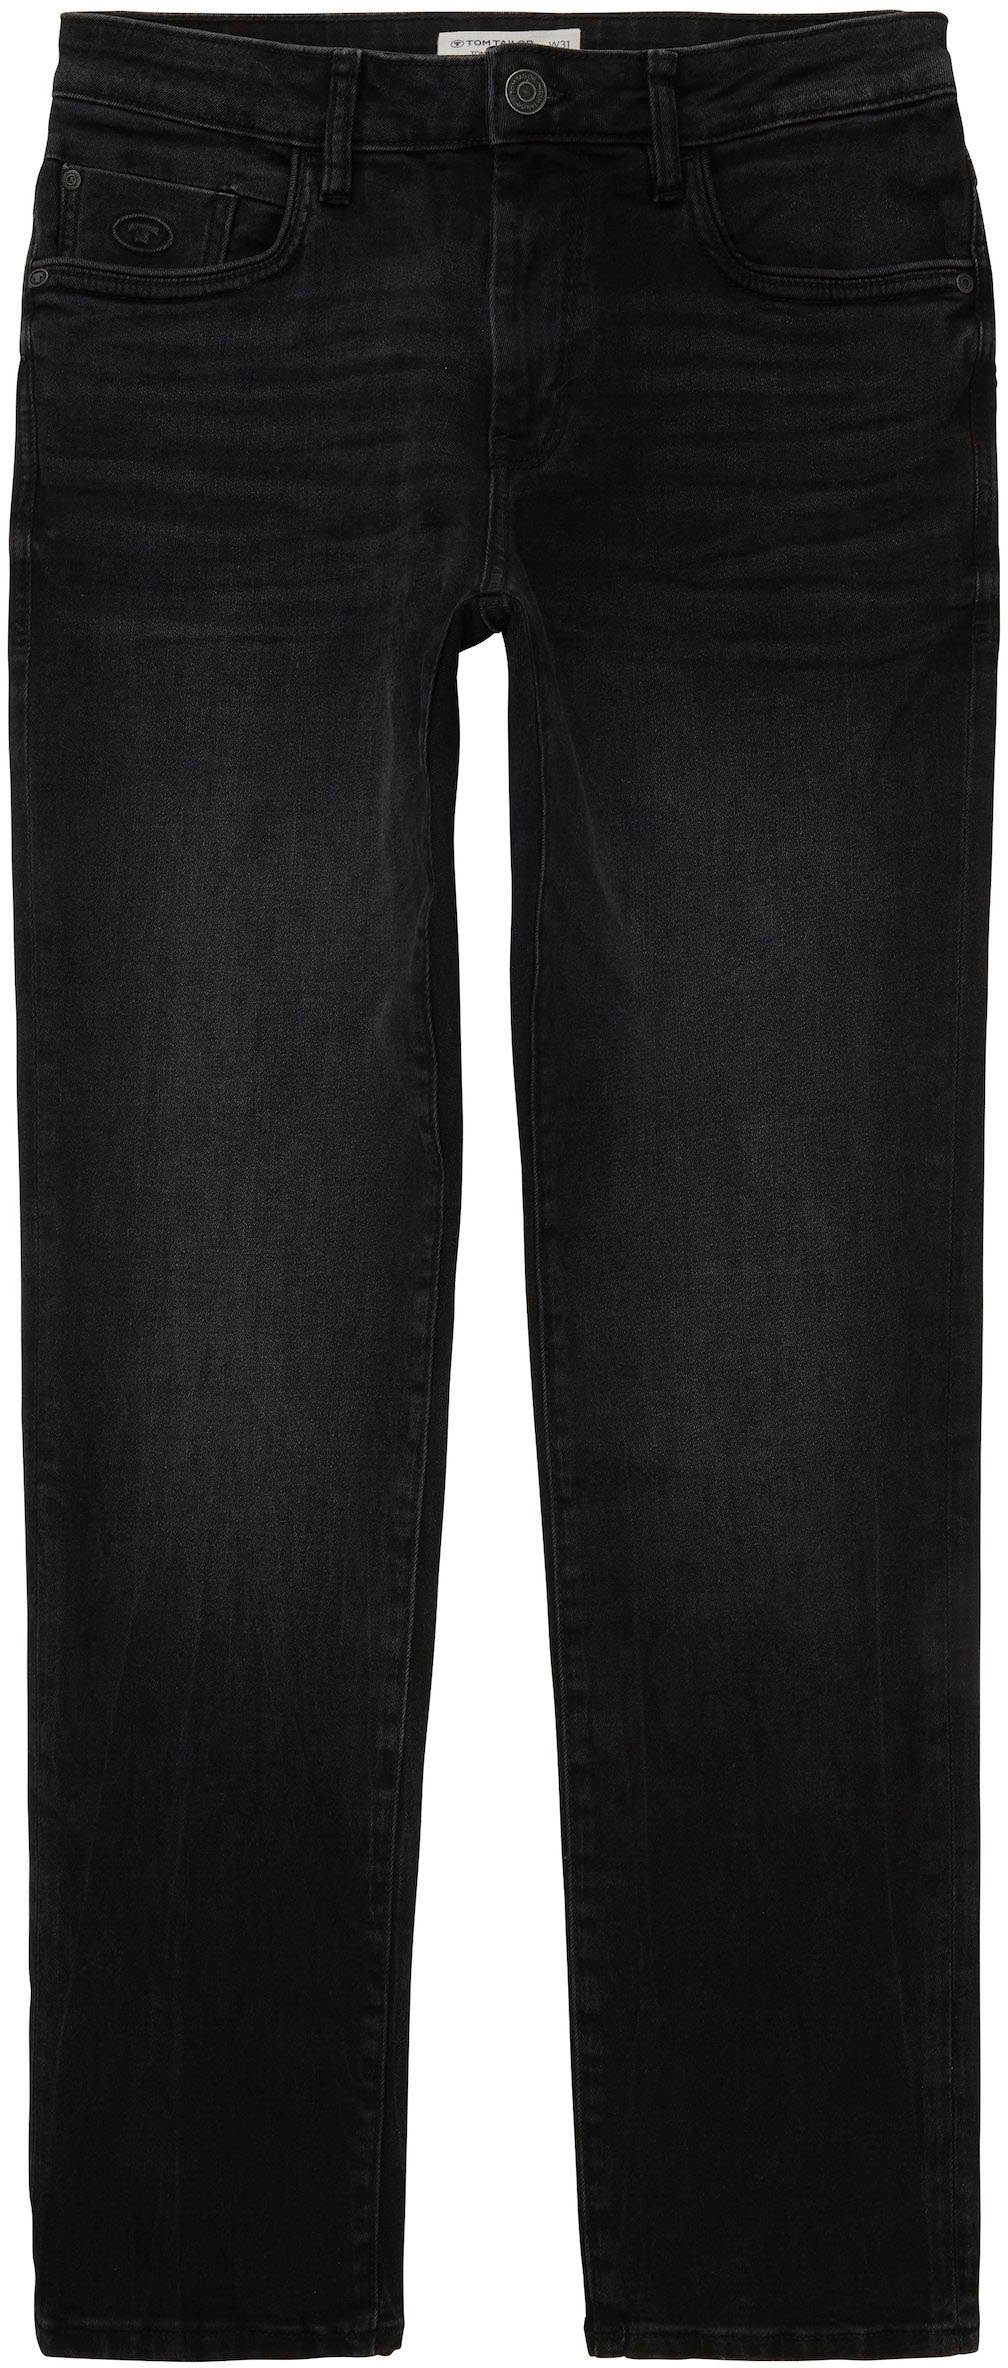 Josh TOM dark TAILOR mit 5-Pocket-Jeans Reißverschluss used